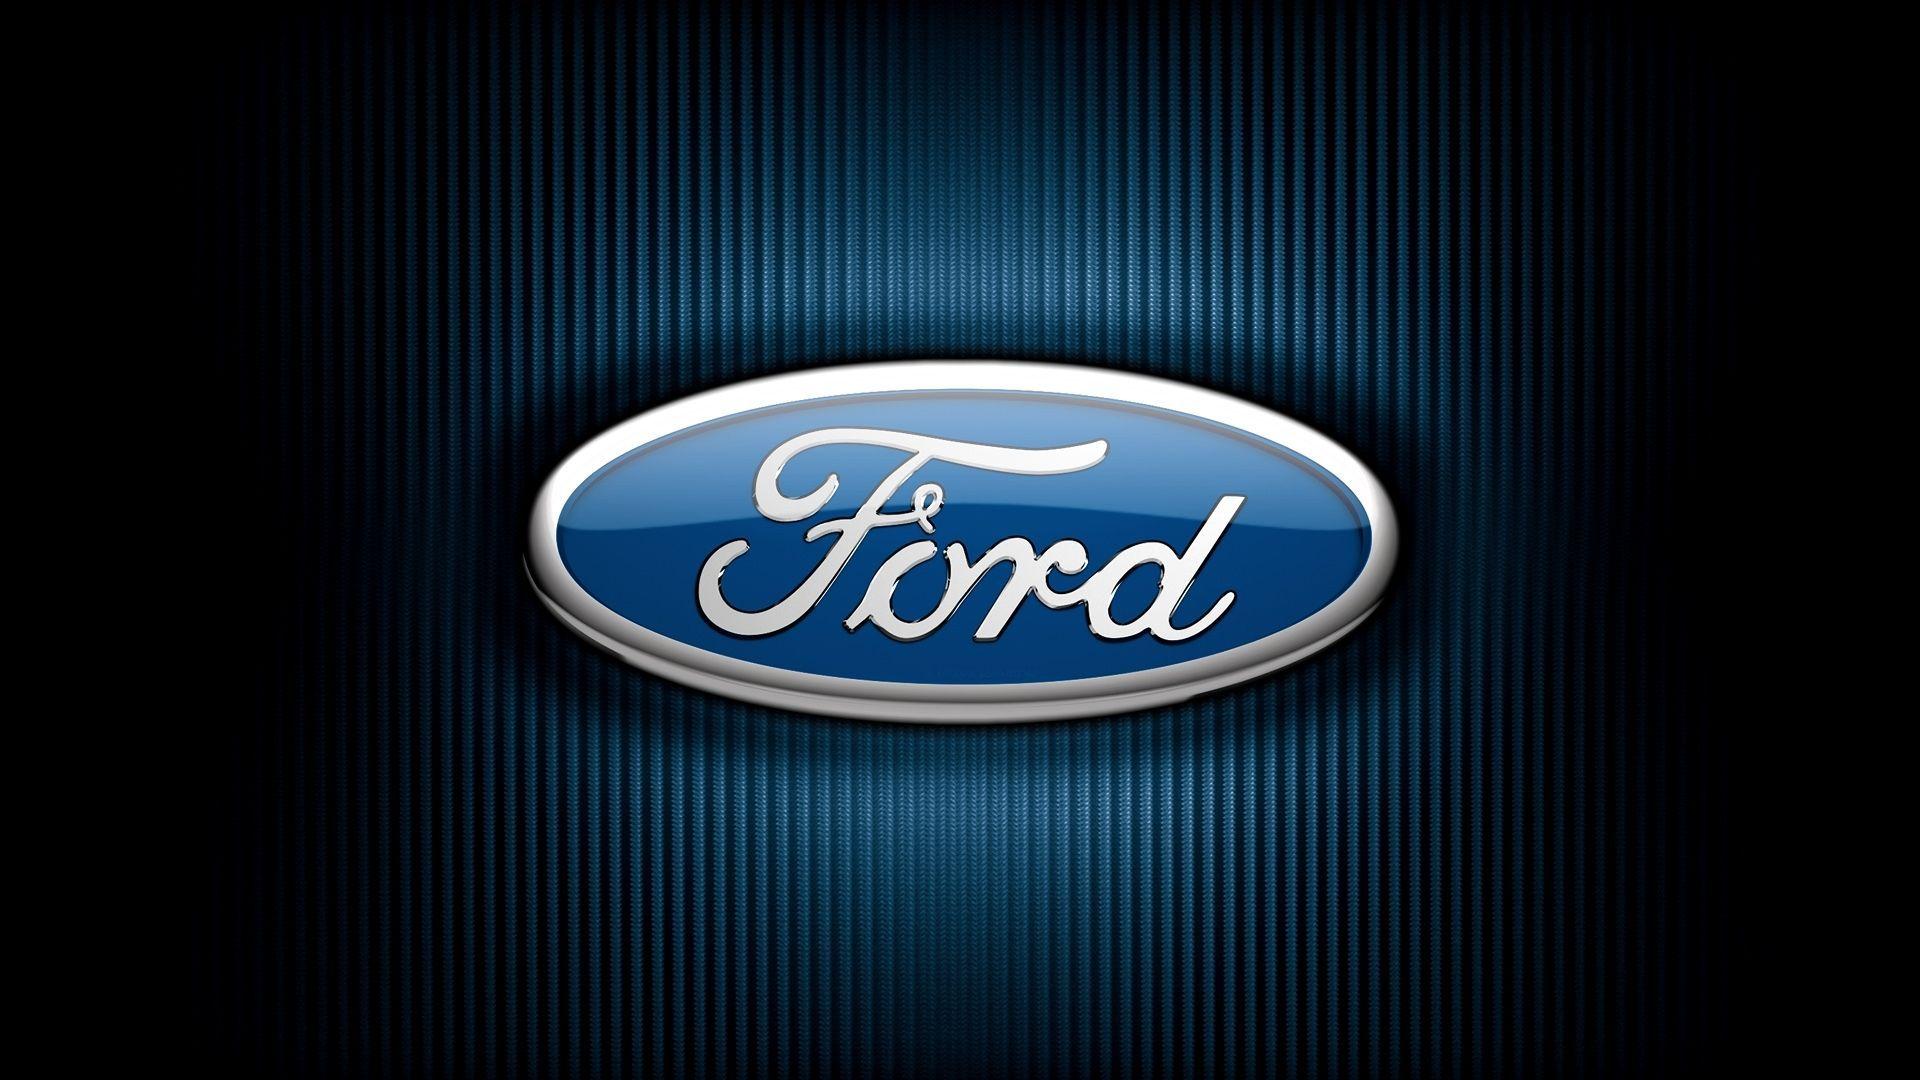 Ford Logo - ford logo wallpaper 1920 X 1080 | Ford Logo | Pinterest | Ford, Ford ...